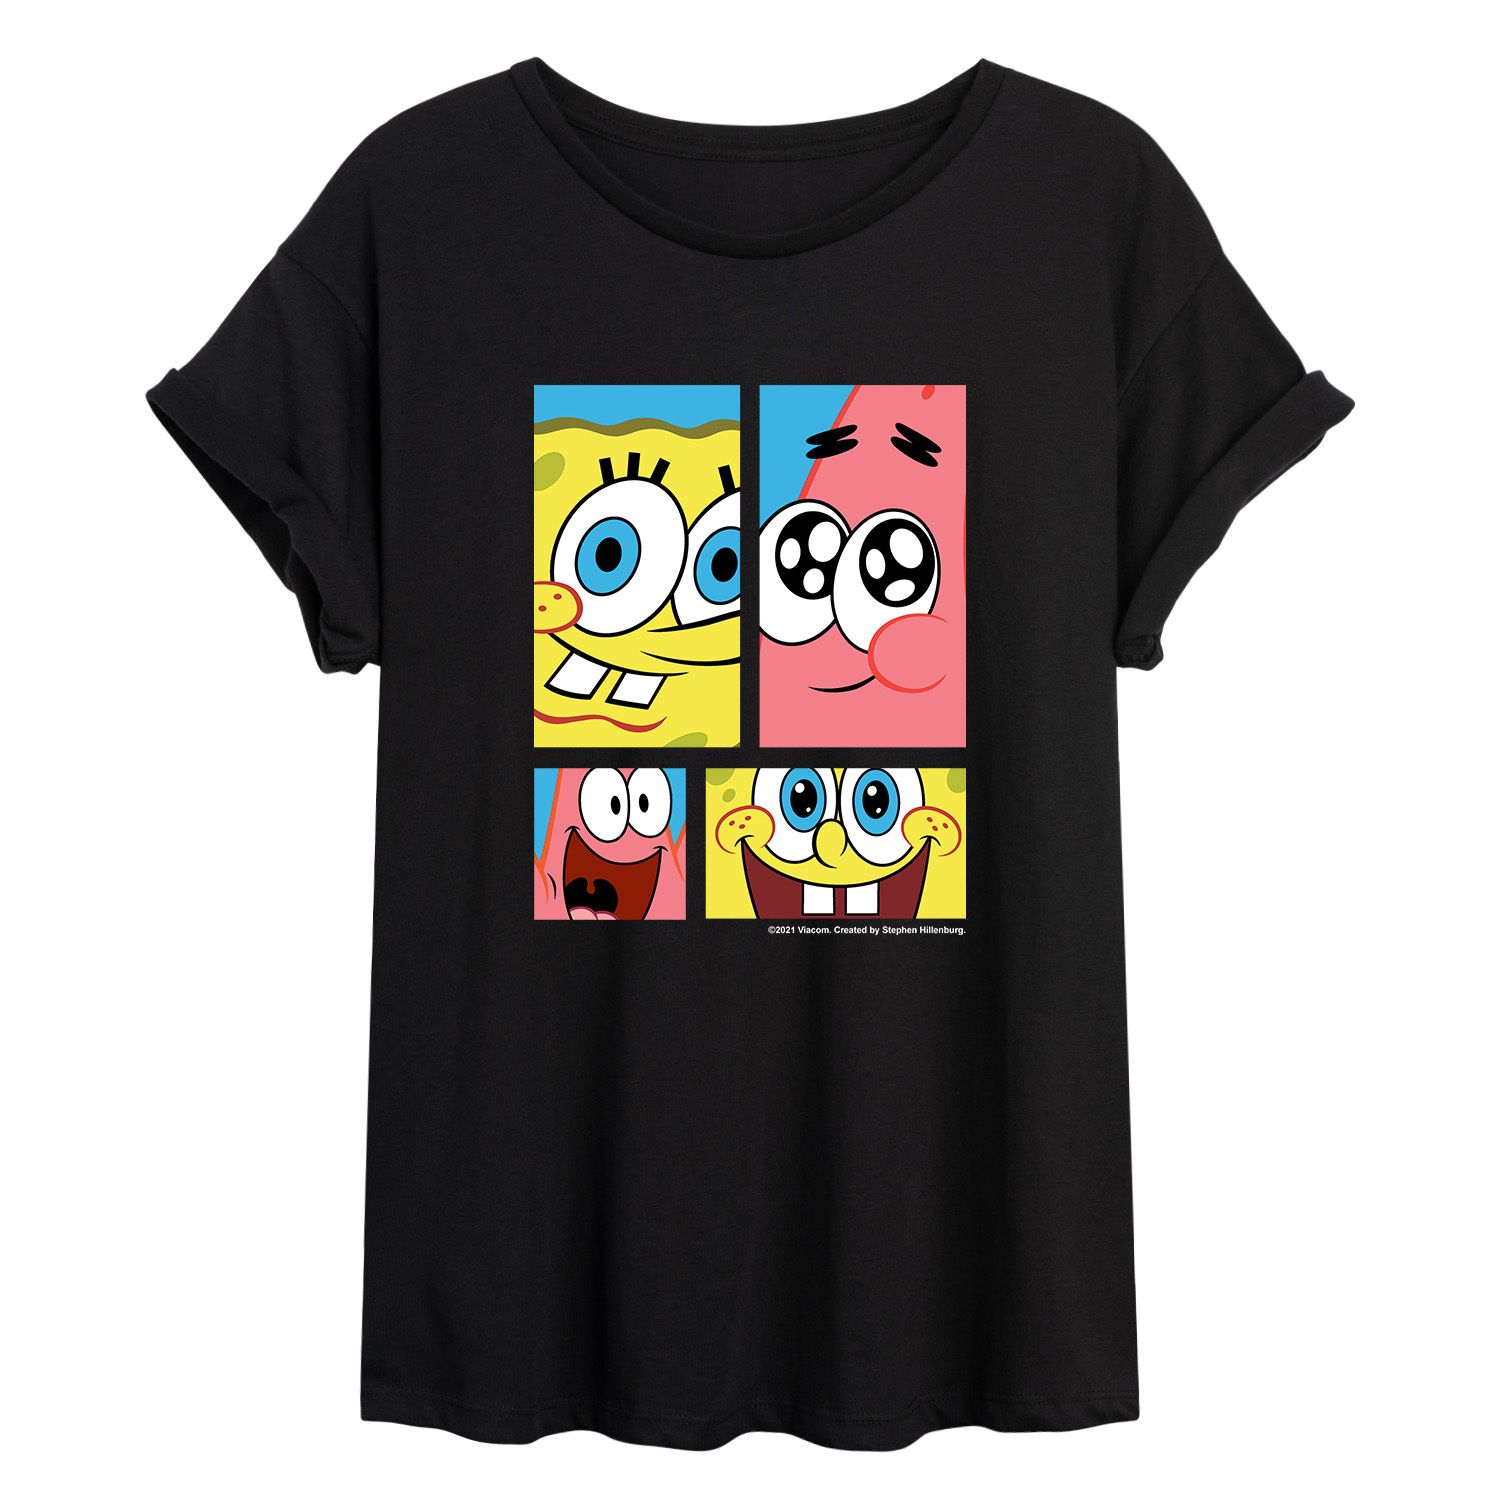 Квадратные Штаны Губки Боба для юниоров и струящаяся футболка Патрика Licensed Character